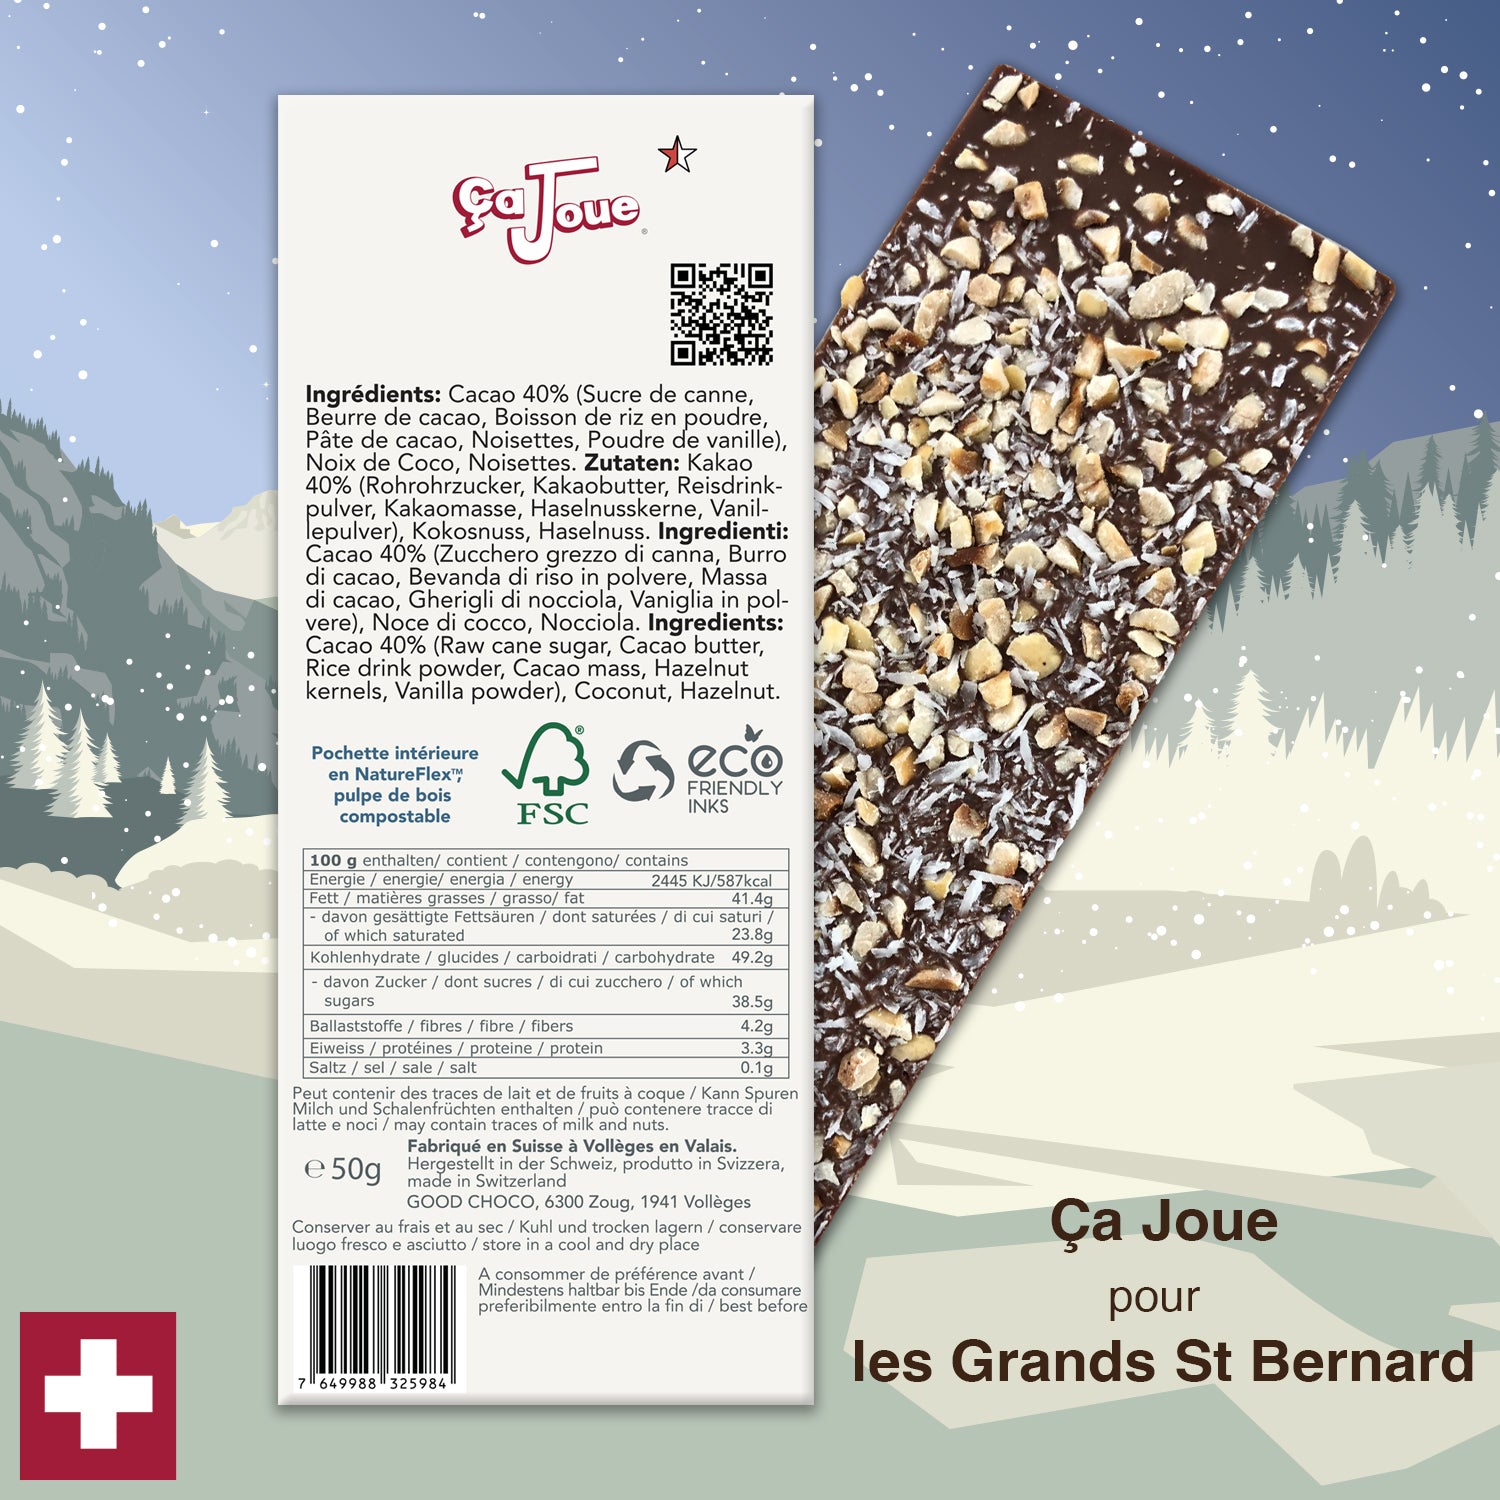 Ça Joue für die Freerider (Ref-BV2) Schokolade aus Val de Bagnes